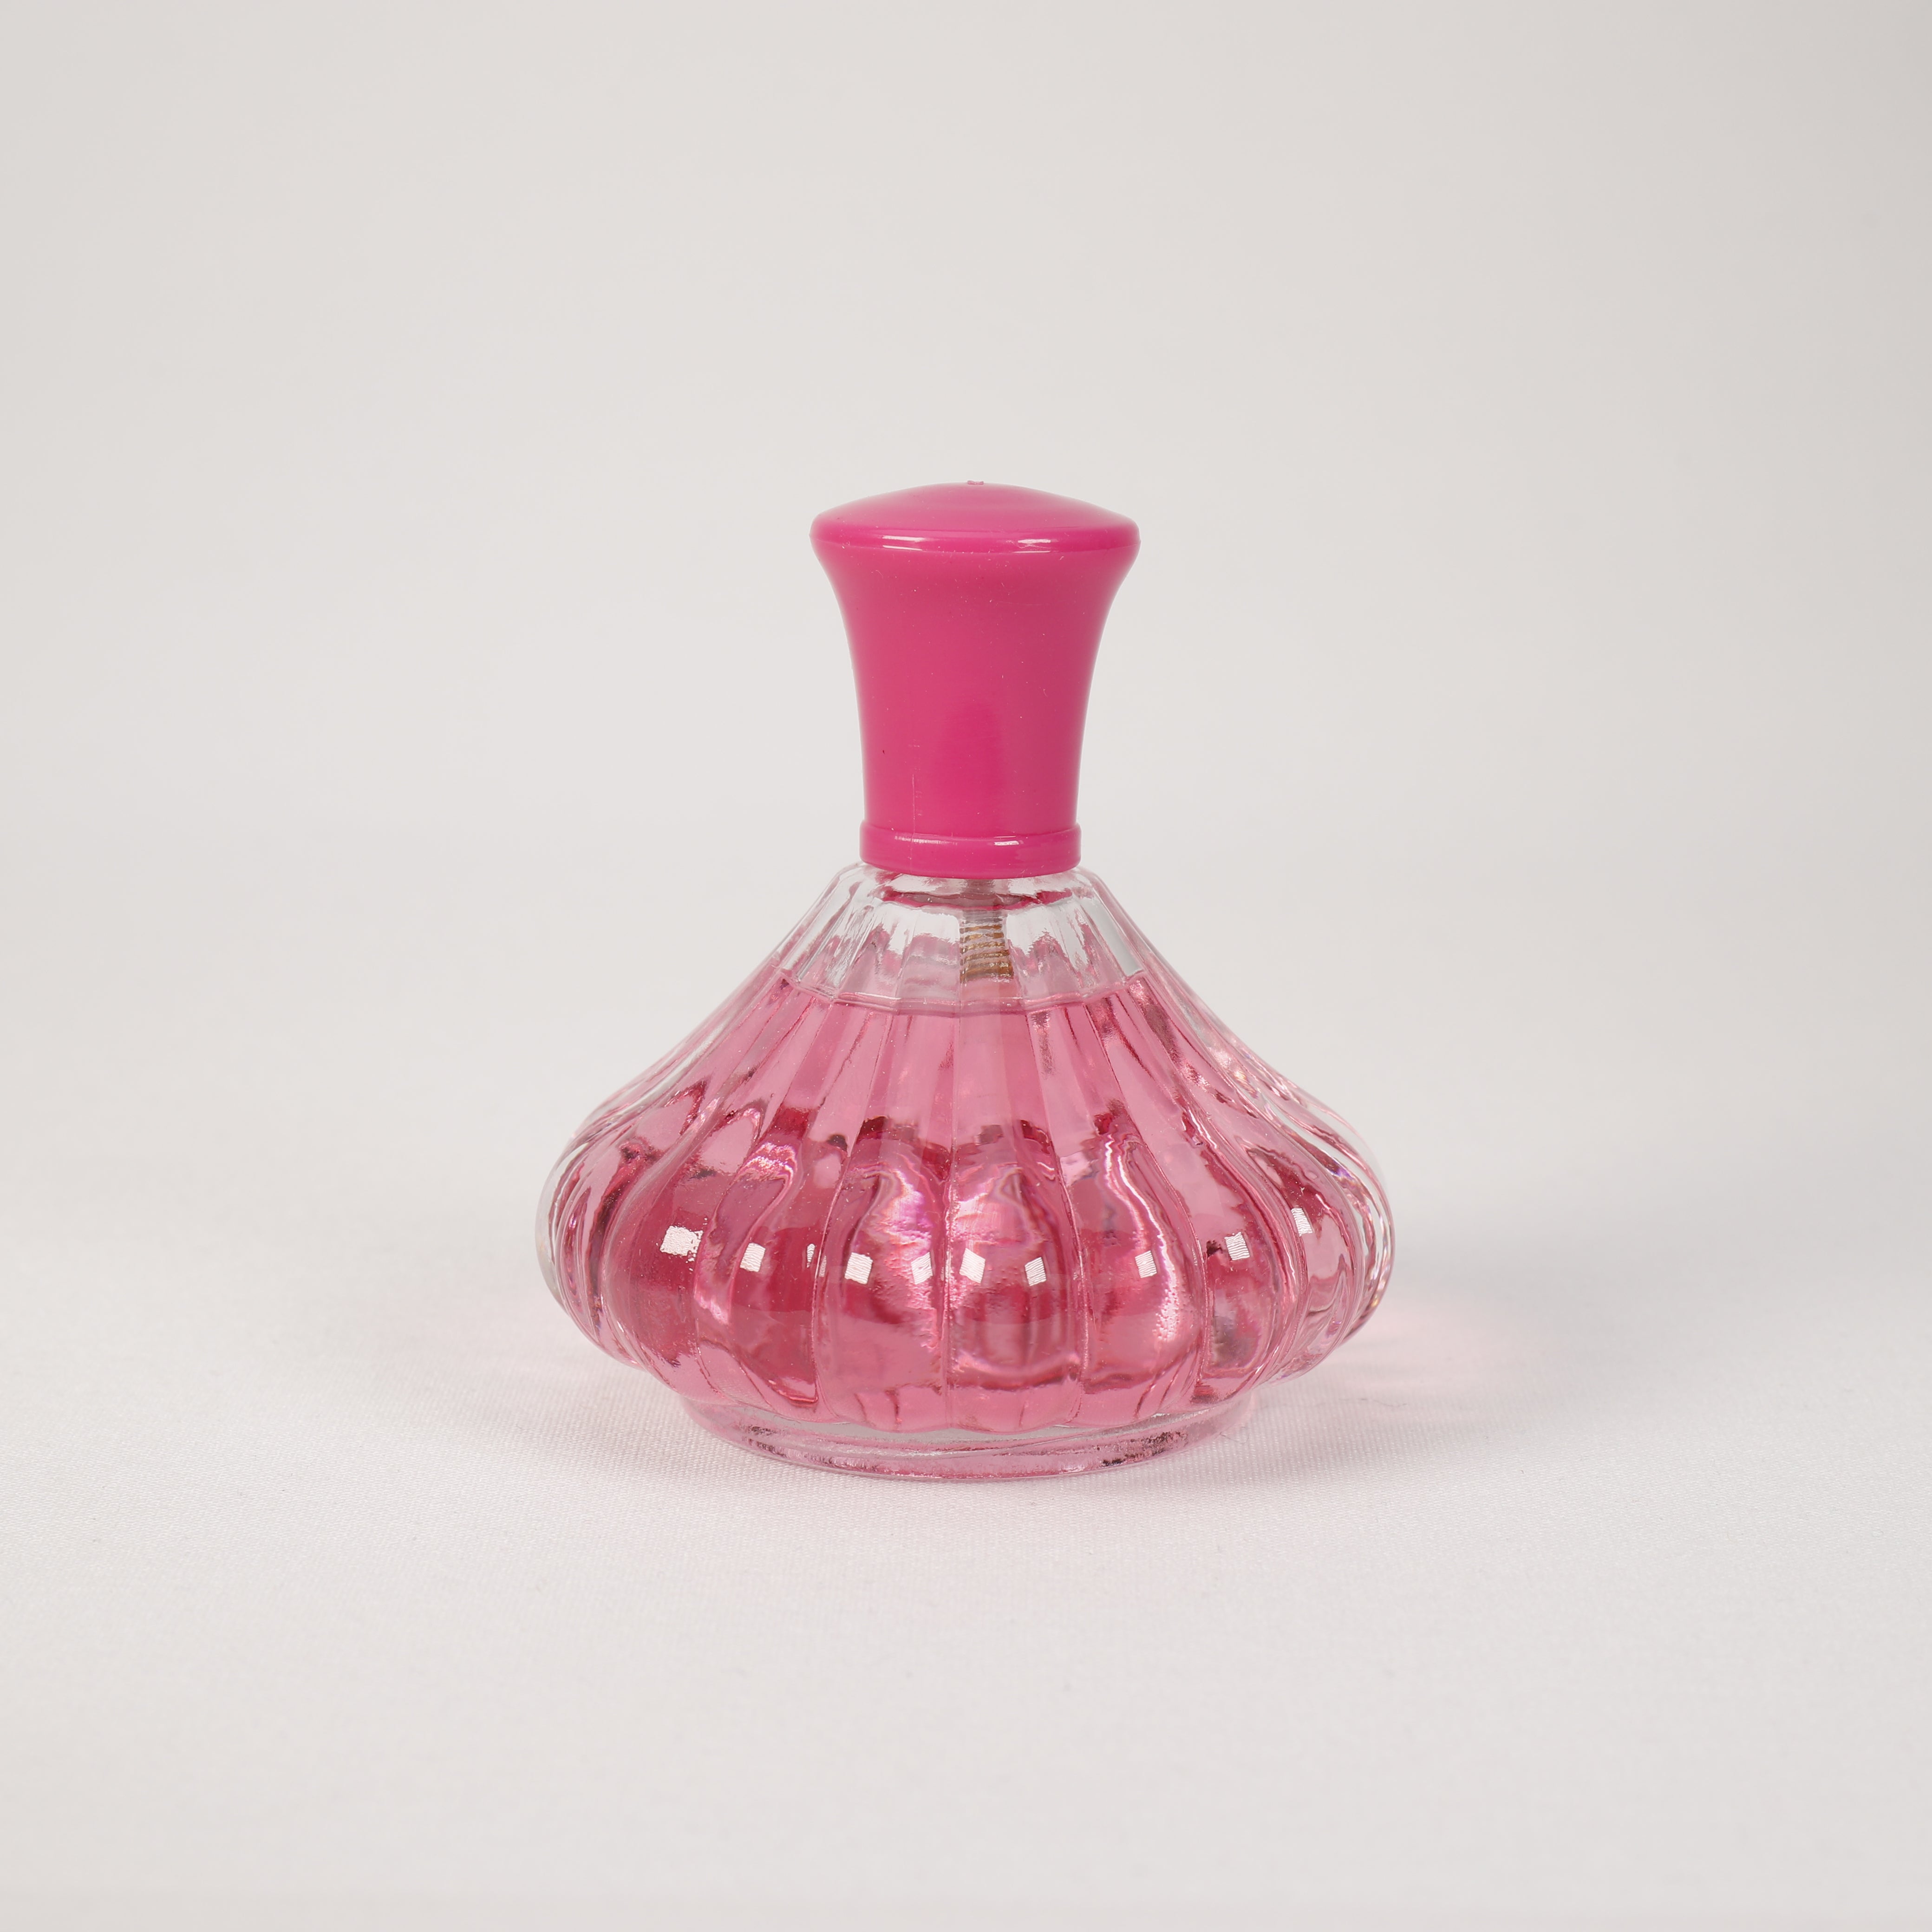 Mountain Rose Pink für Damen, Vaporizer mit natürlichem Spray, 100 ml, Duft, Parfüm, NEU OVP